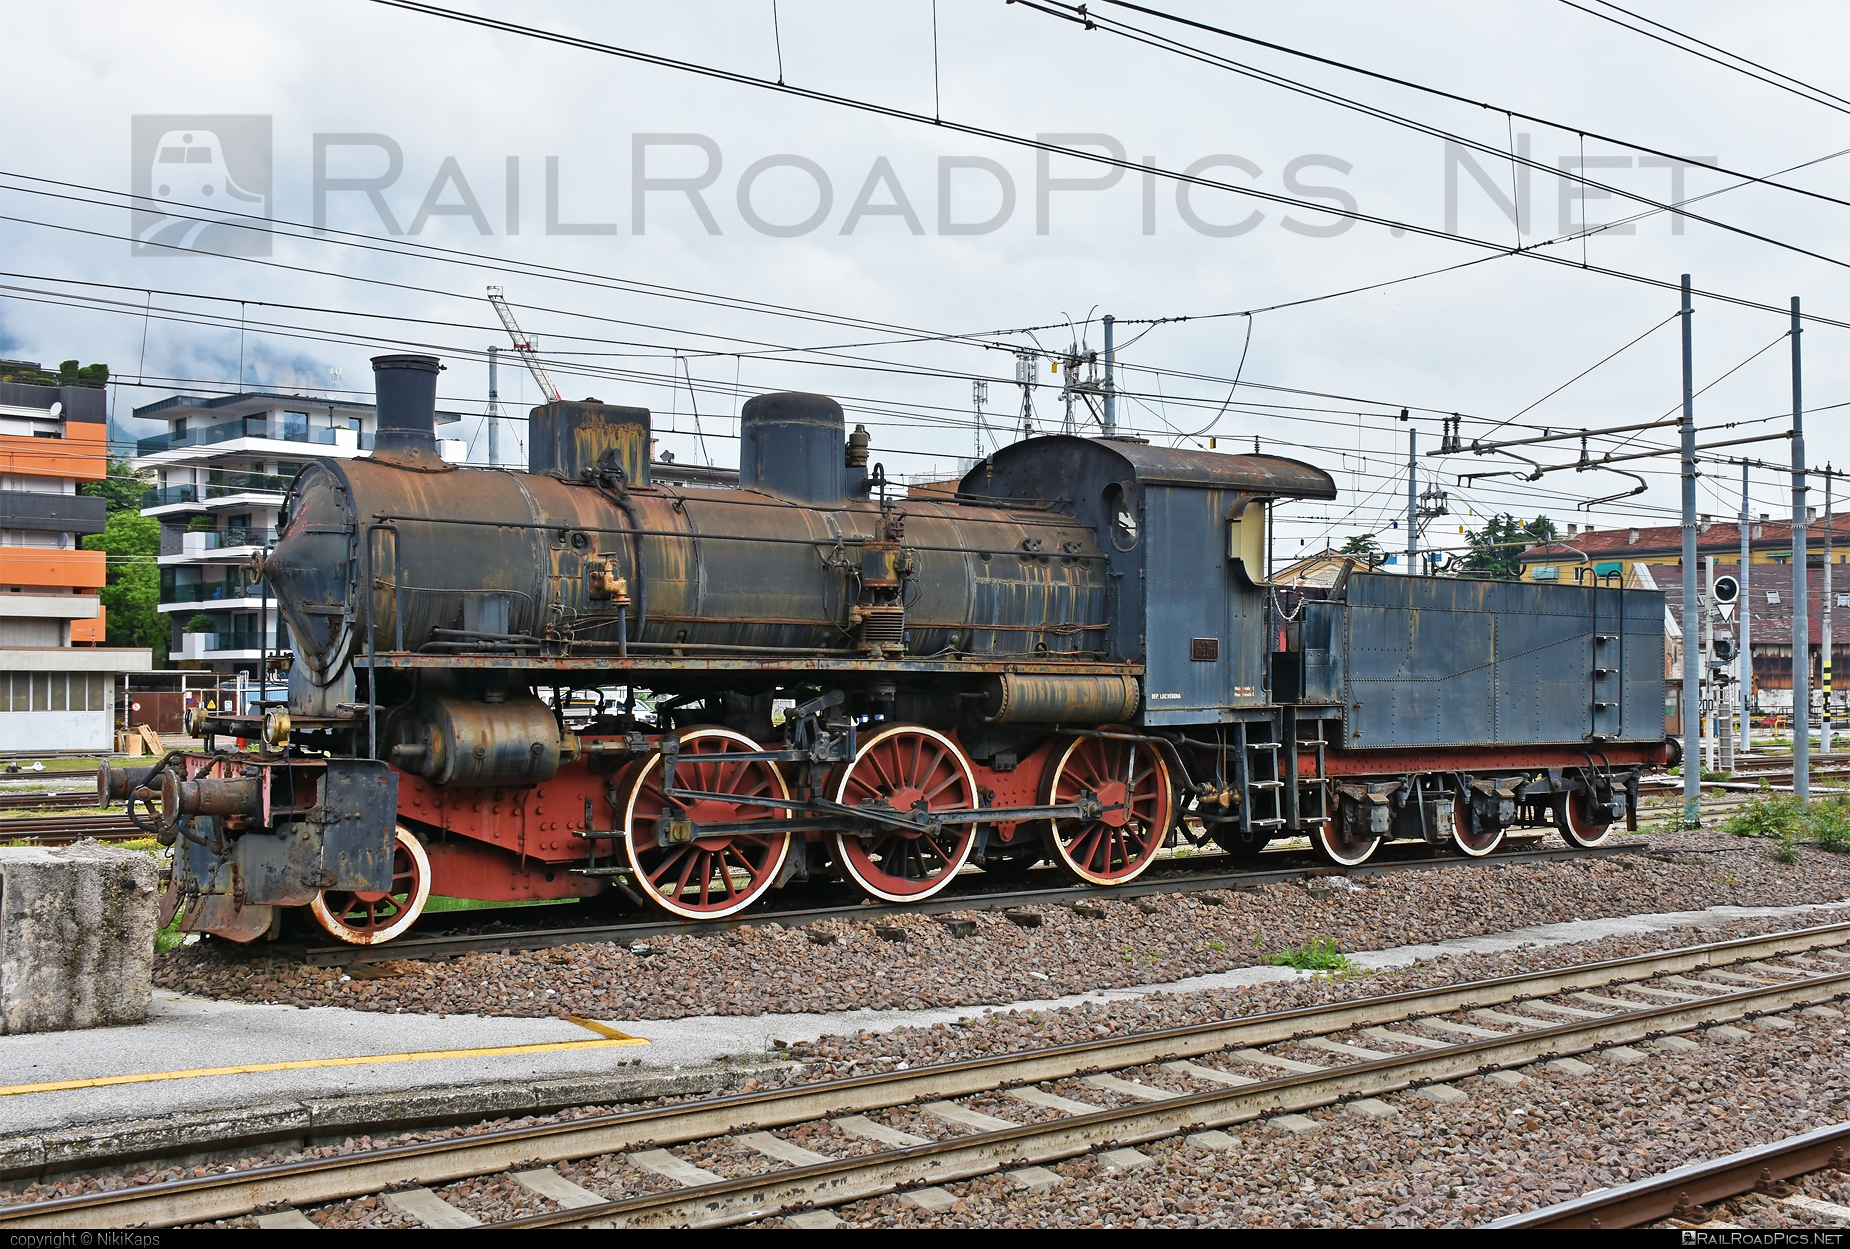 FS Class 625 - 625.011 operated by Ferrovie dello Stato Italiane #FerrovieDelloStatoItaliane #ferroviedellostato #fs #fsClass625 #fsitaliane #saronno